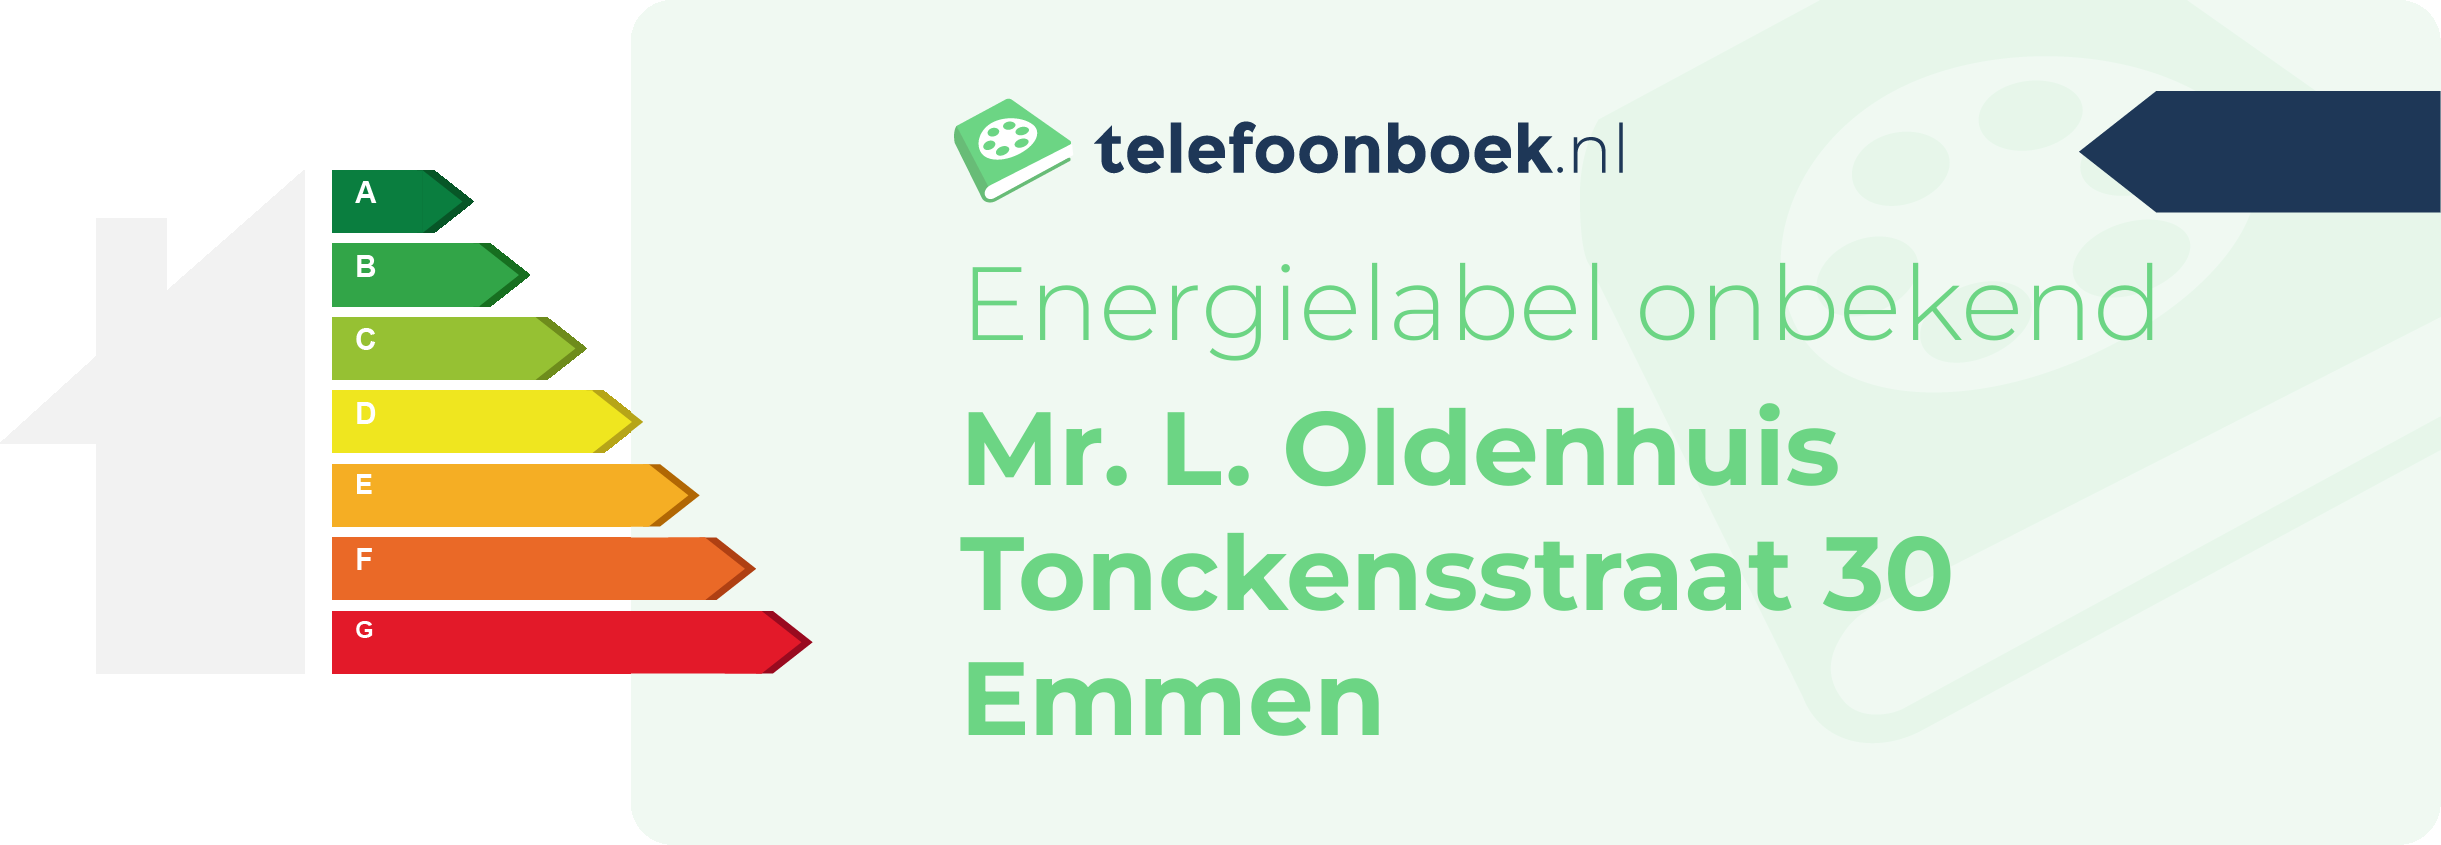 Energielabel Mr. L. Oldenhuis Tonckensstraat 30 Emmen